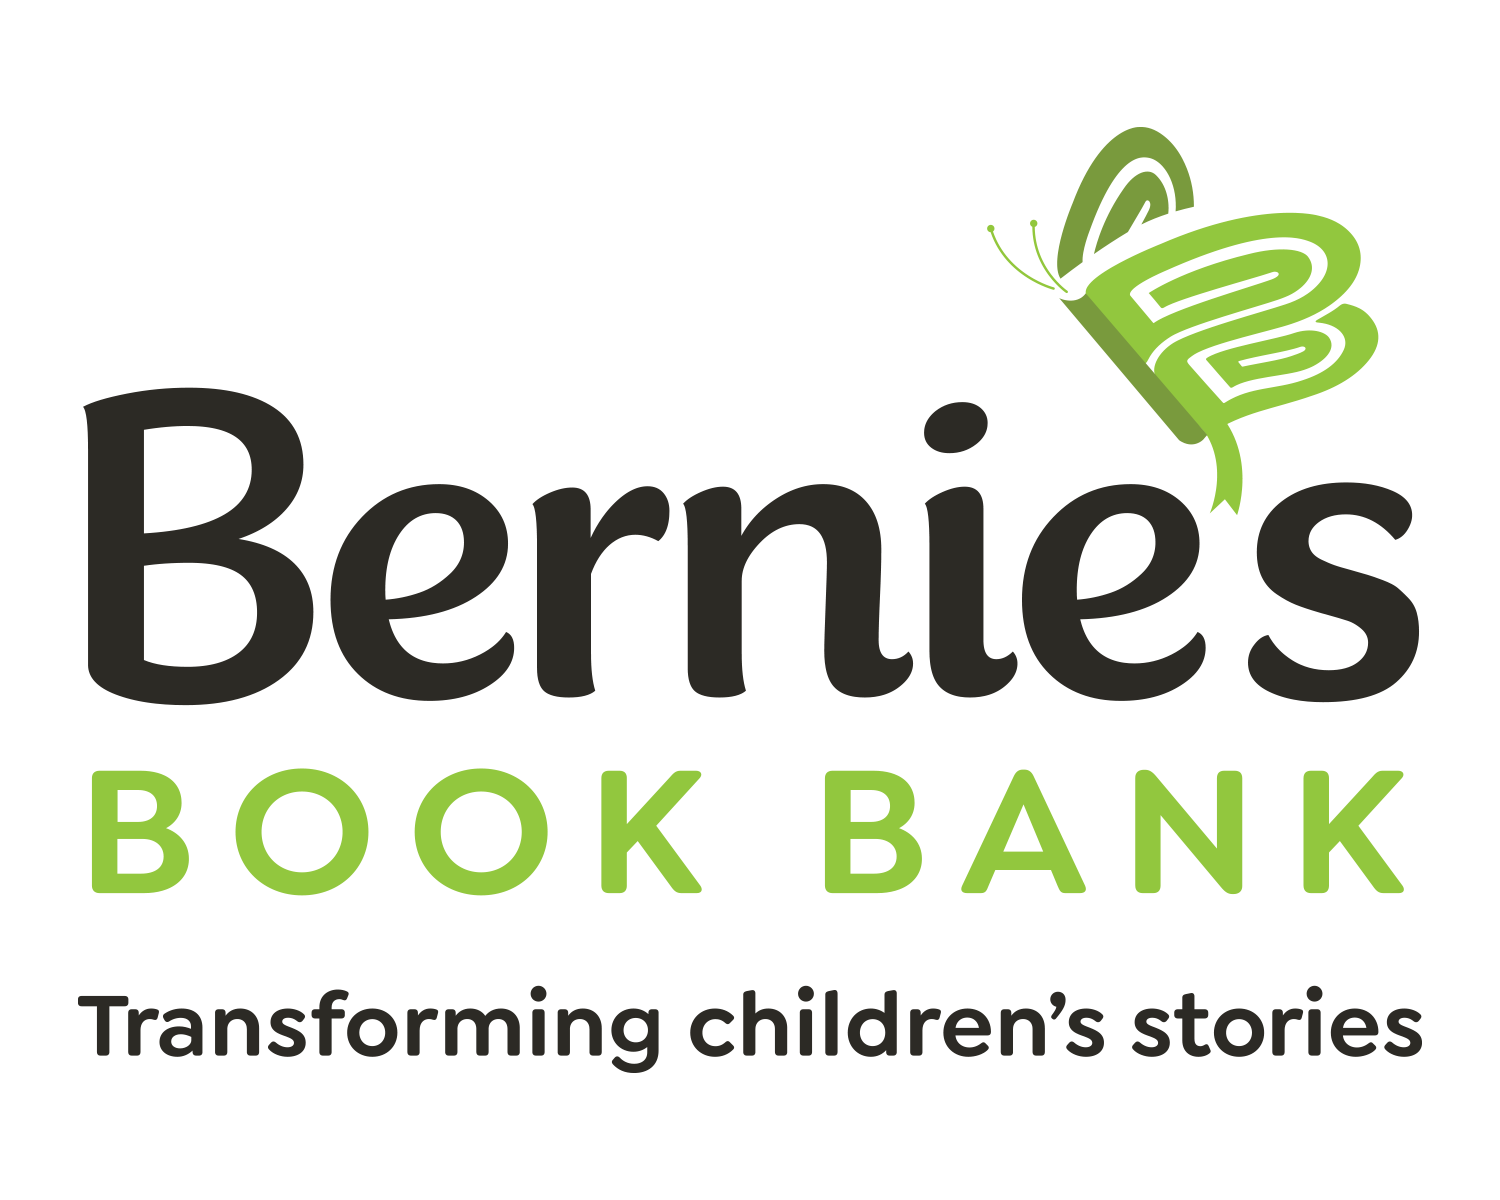 Bernie's book bank logo